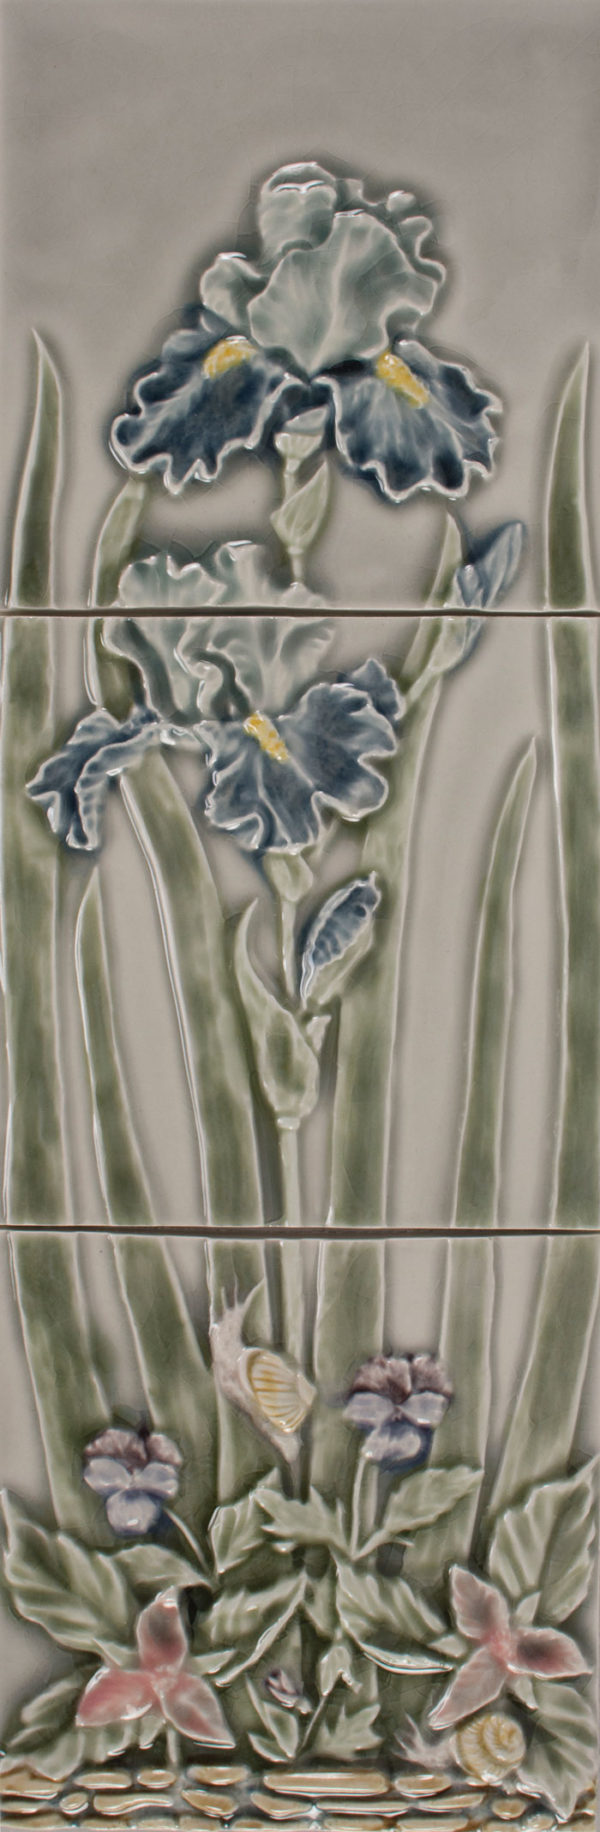 Pratt and Larson Tile 621518 Iris Flower panel WW88 - Pratt + Larsonnbspnbspnbsp